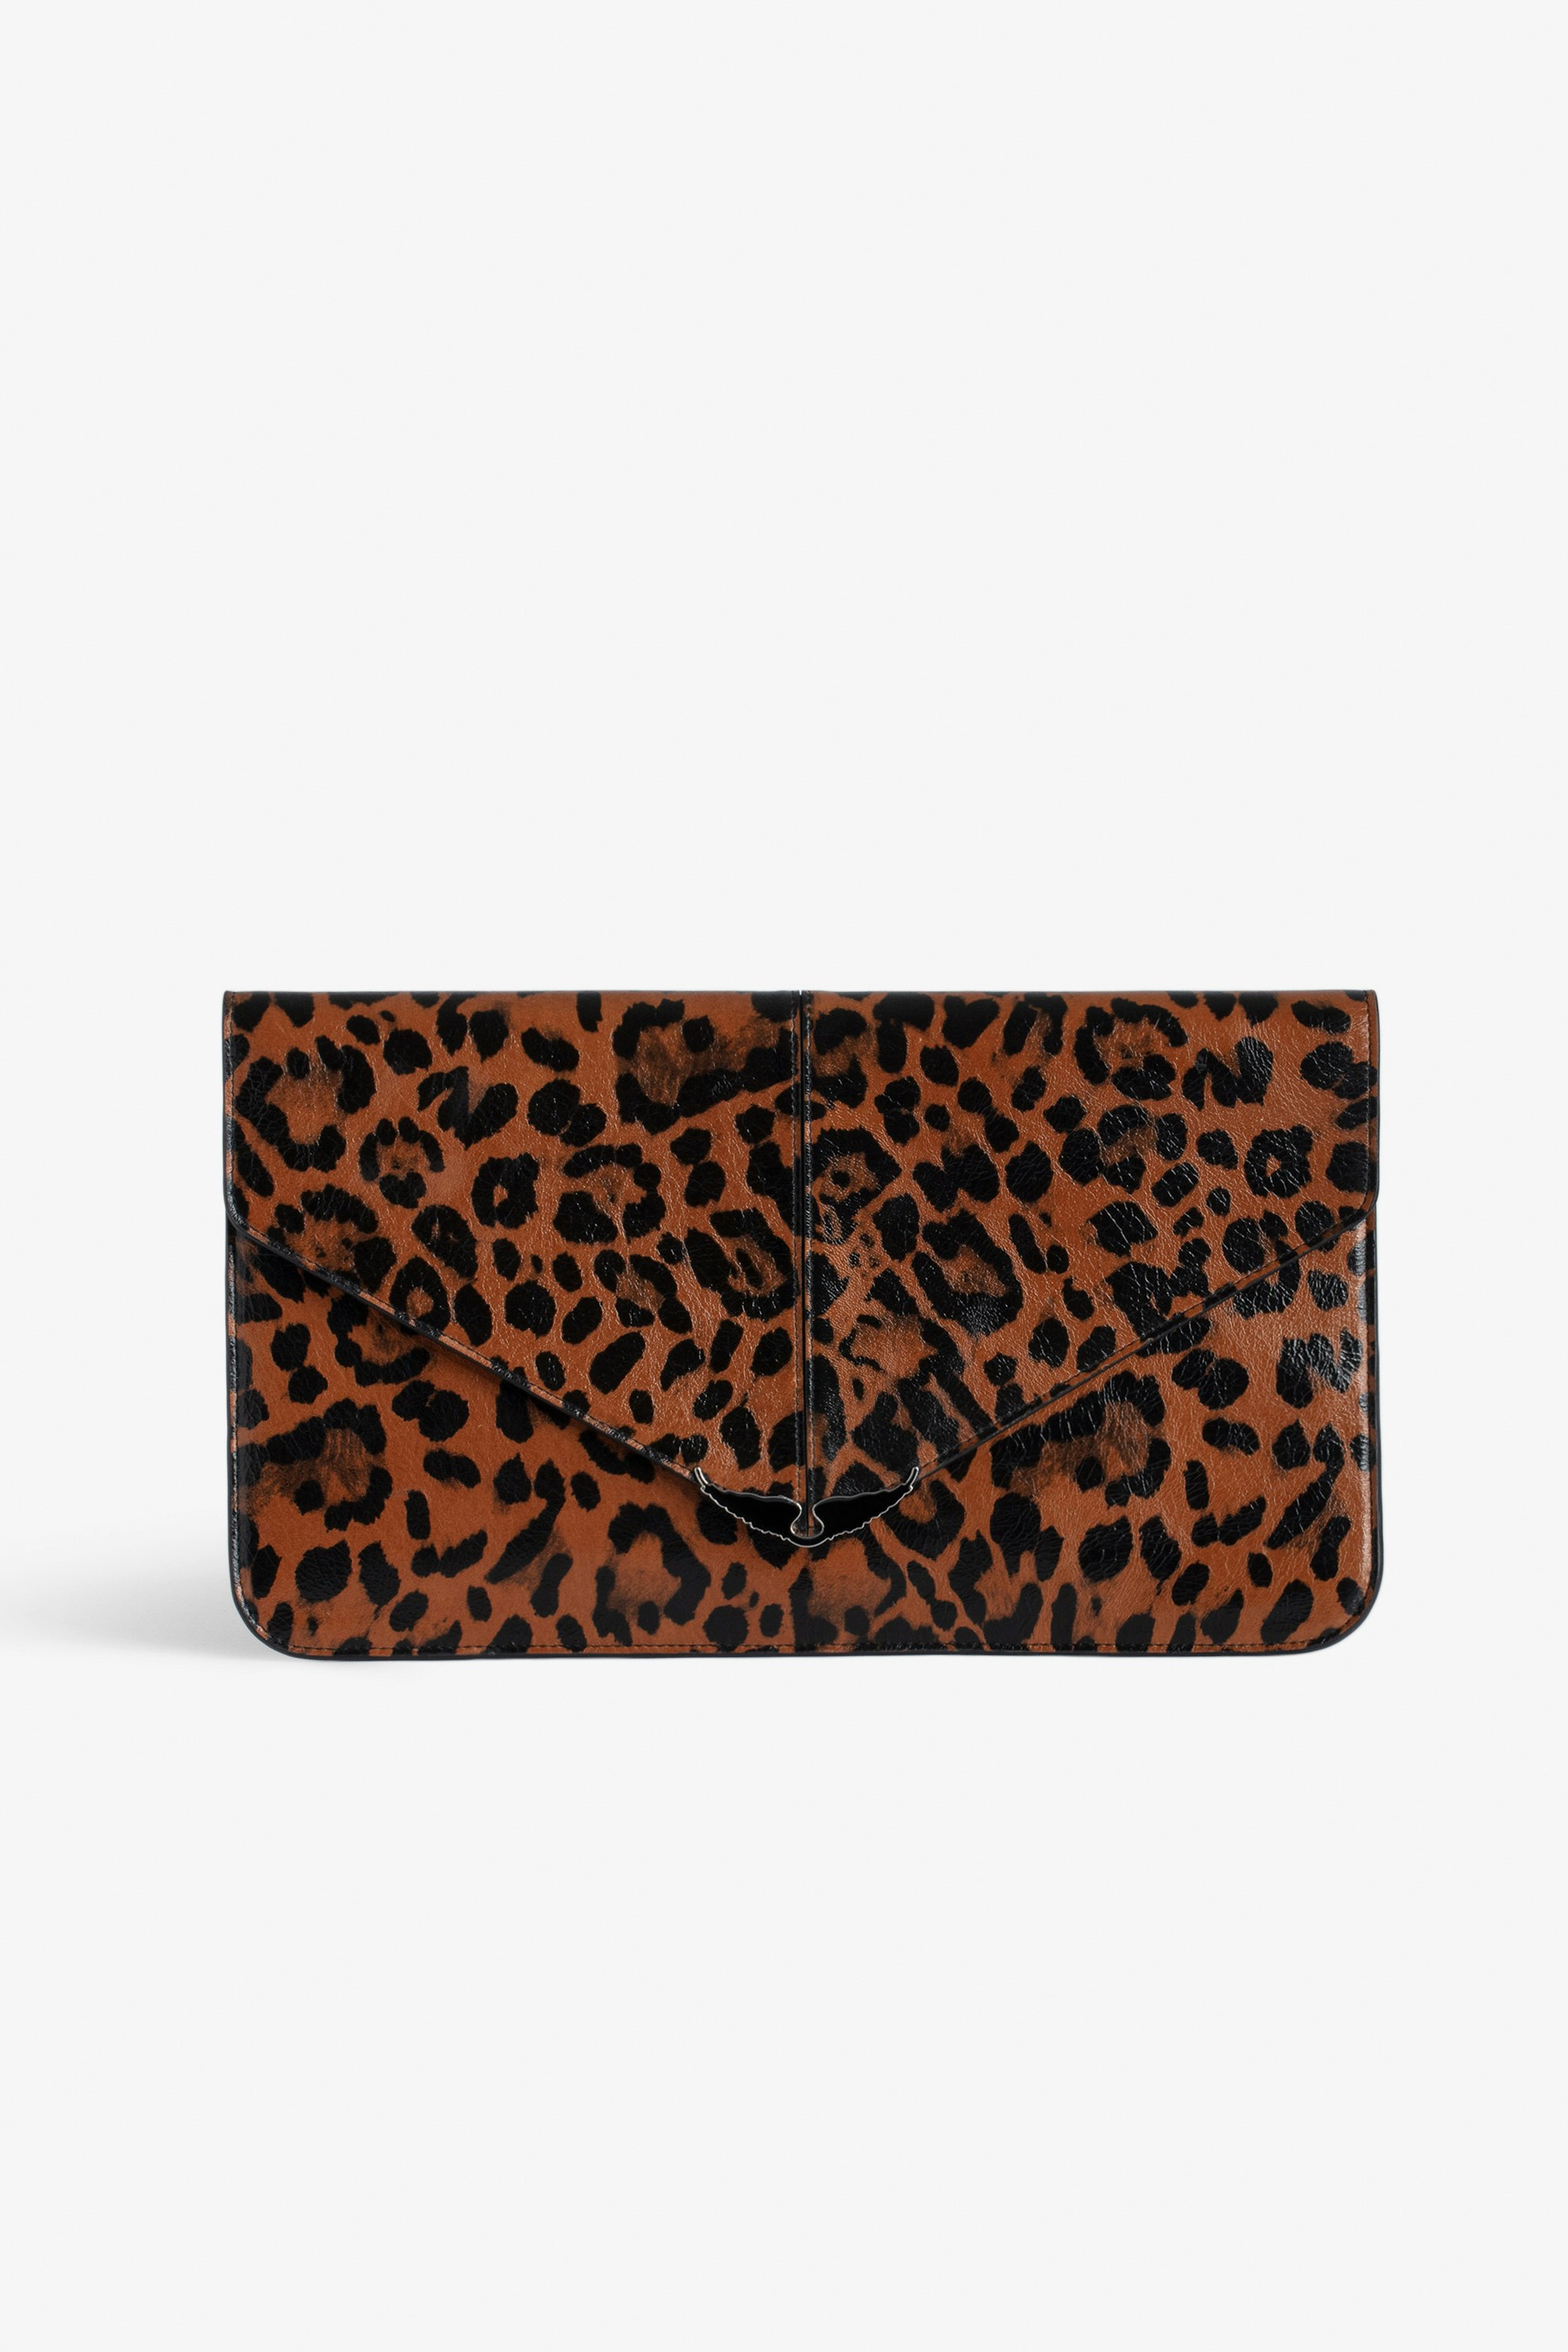 Clutch Borderline Leopard Clutch mit Umschlag aus braunem Lackleder mit Leoparden-Print und einem Flügel-Charm für Damen.